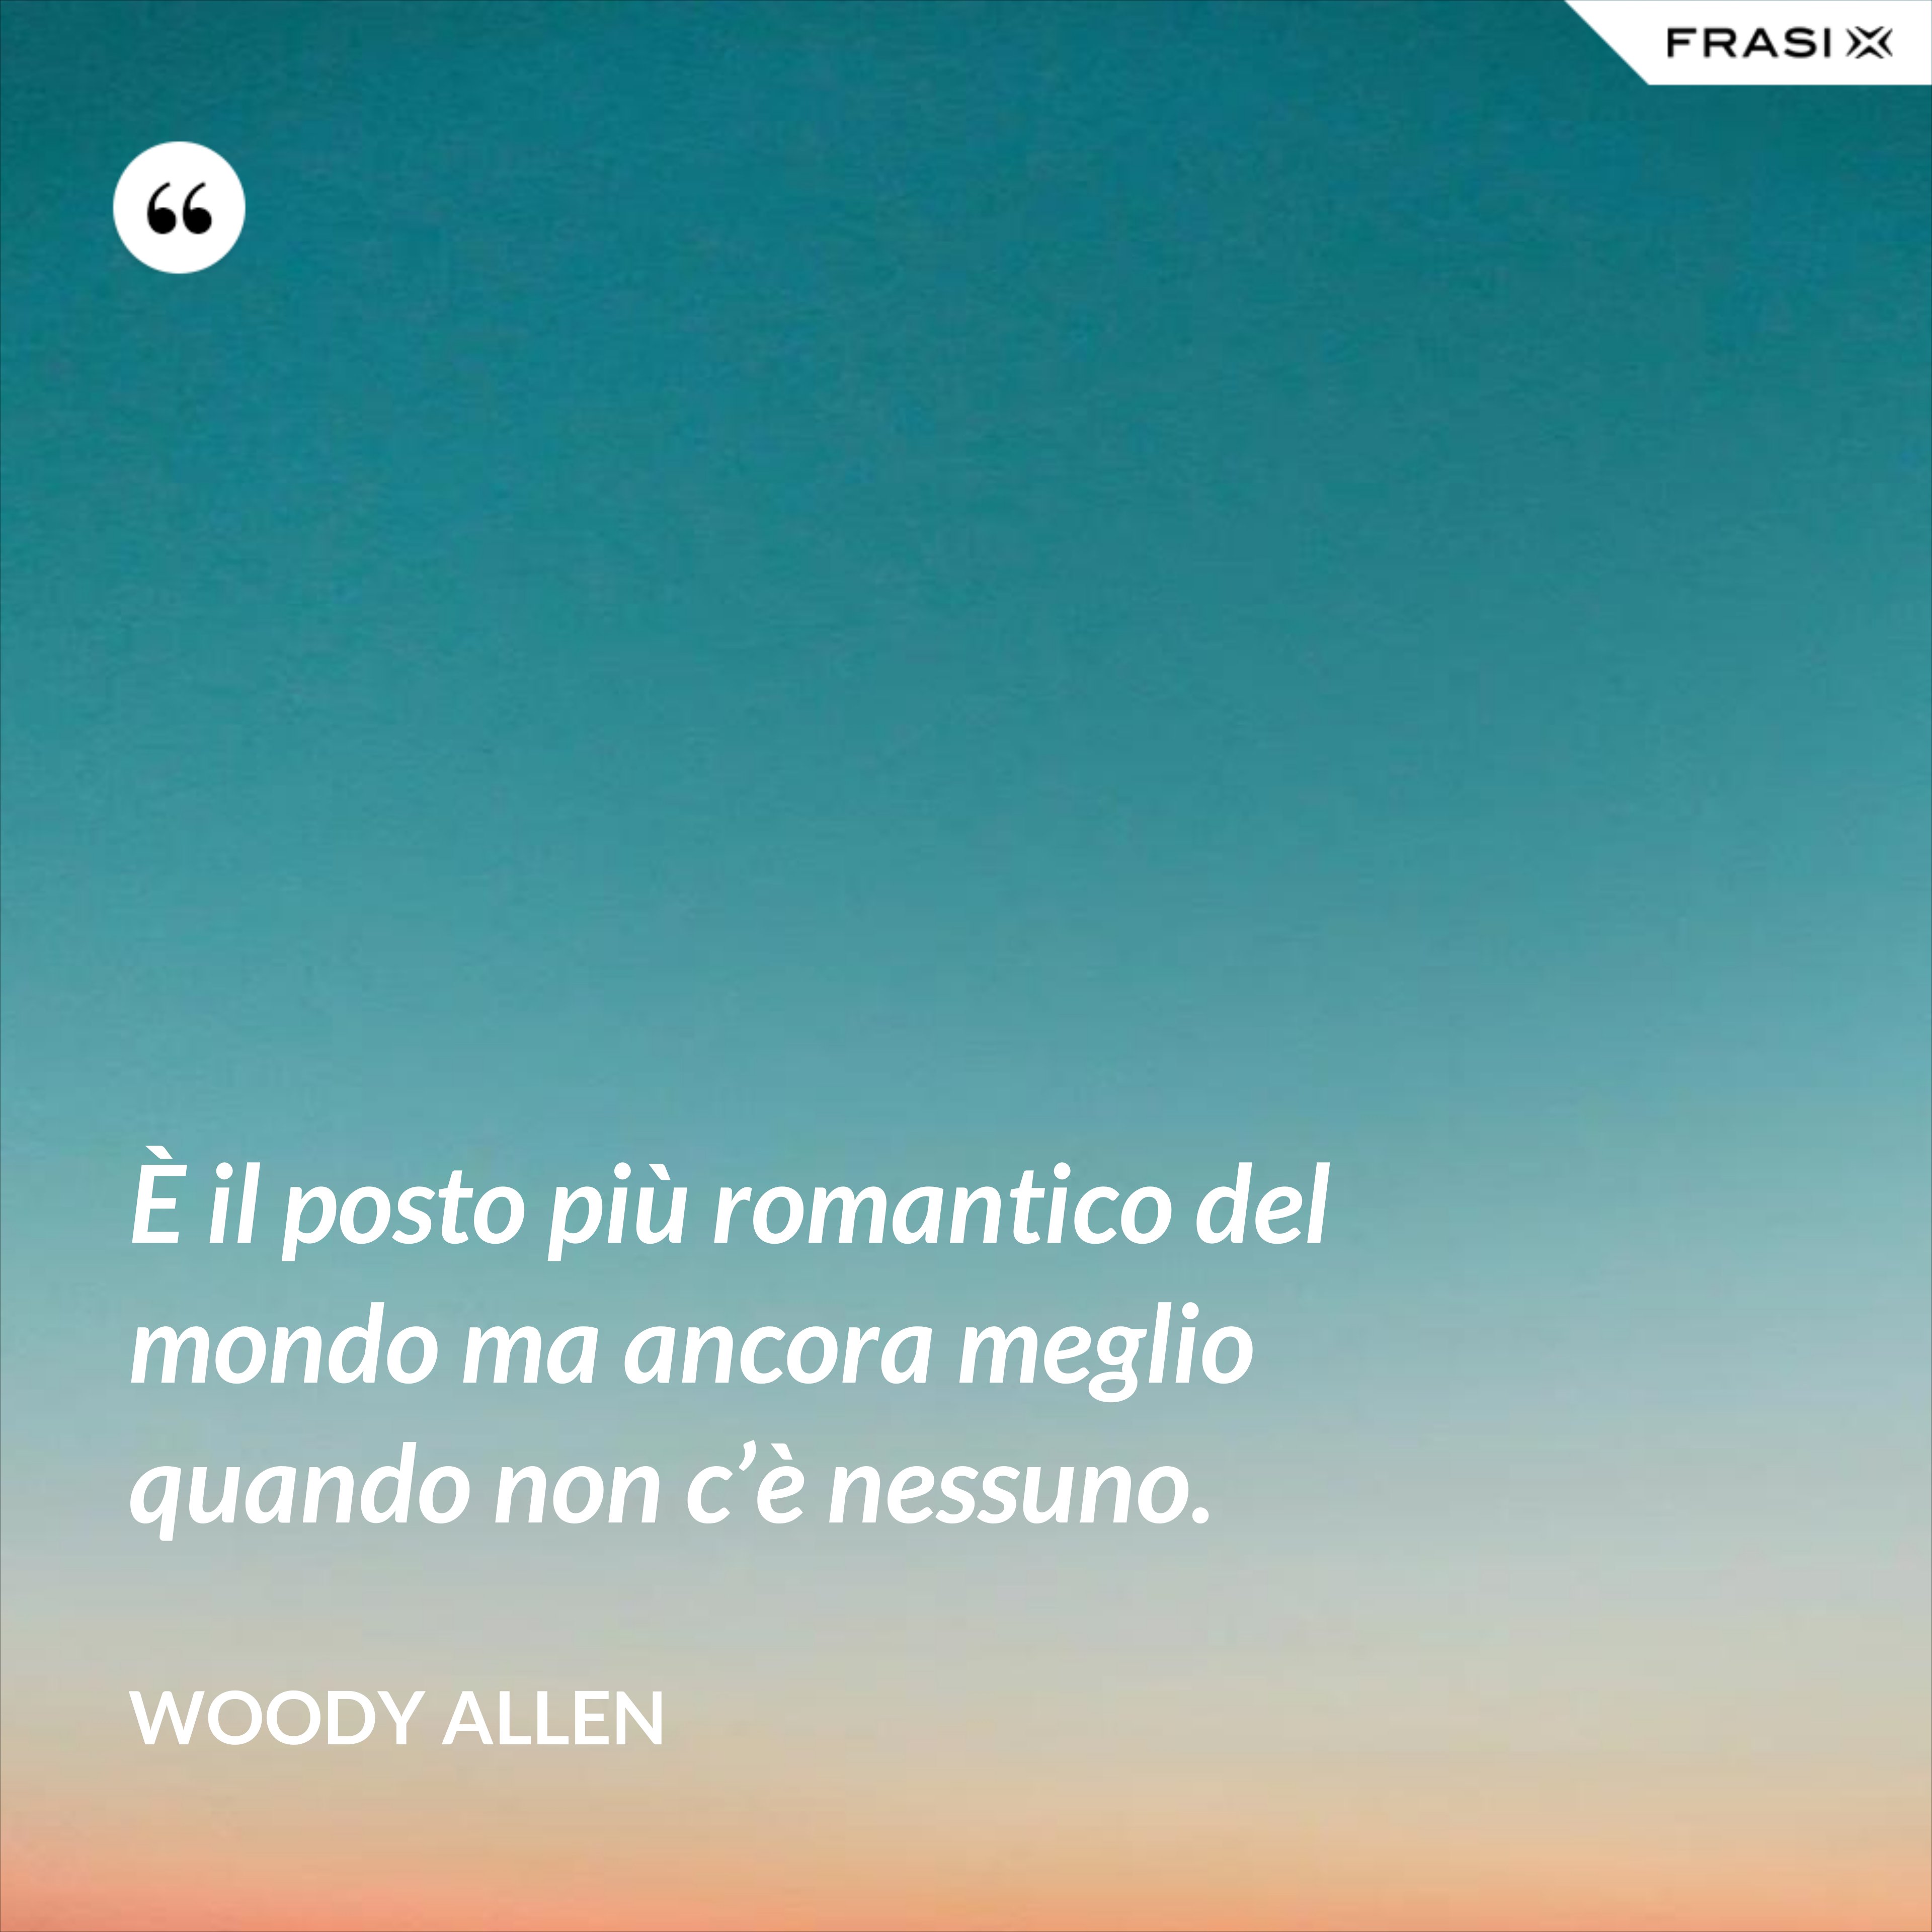 È il posto più romantico del mondo ma ancora meglio quando non c’è nessuno. - Woody Allen